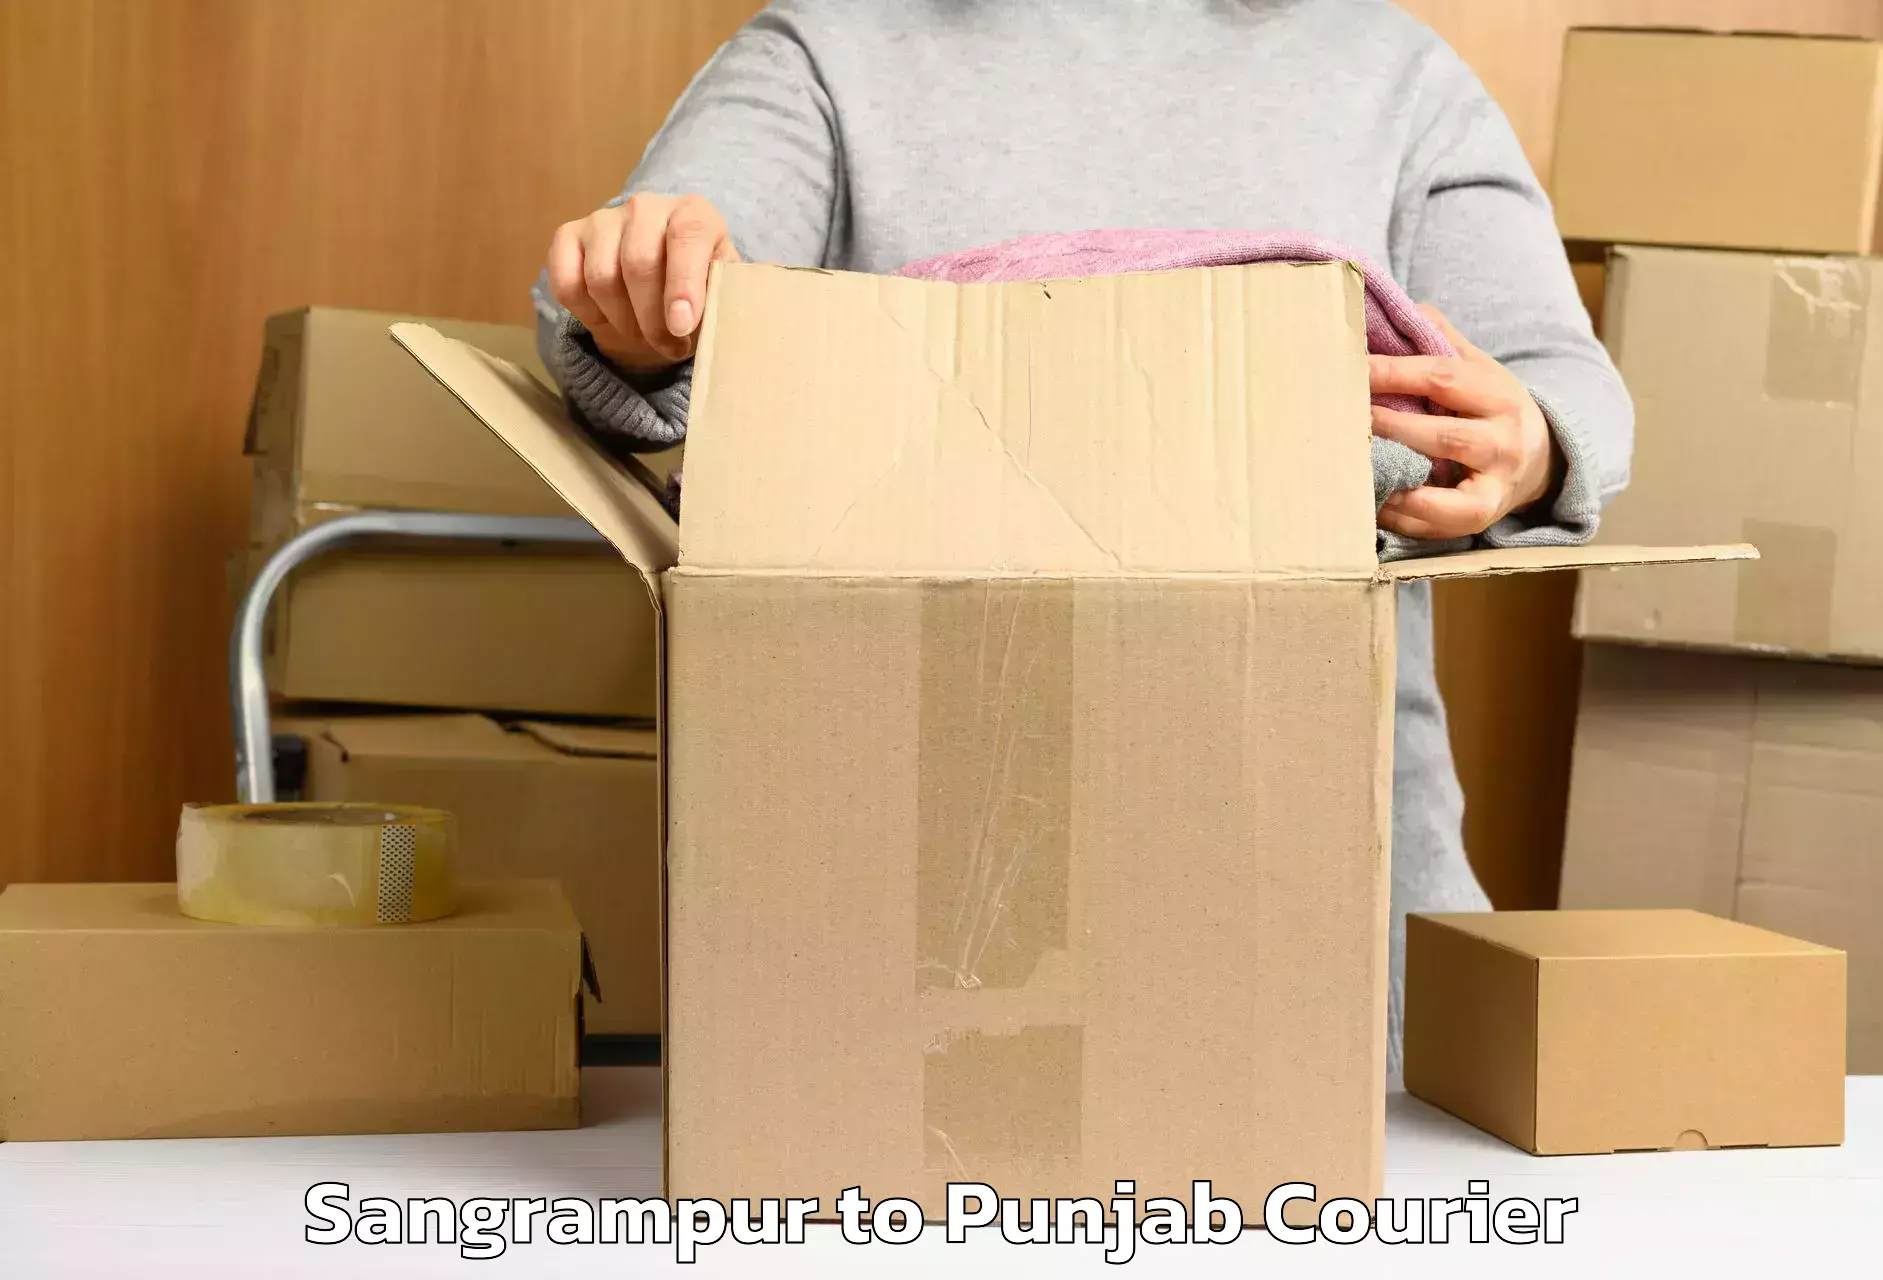 Baggage shipping experts Sangrampur to Sunam